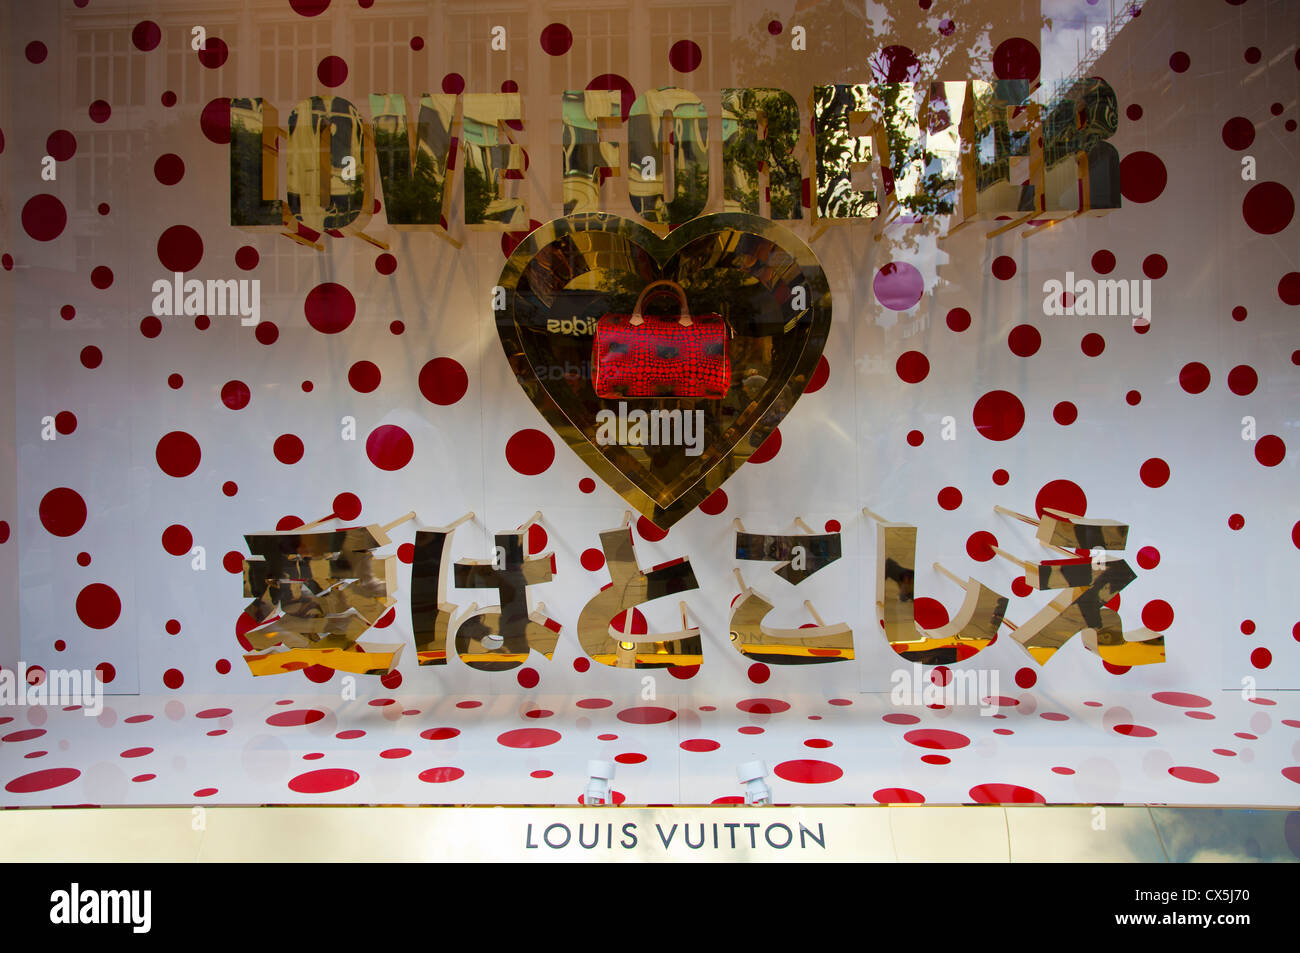 Louis Vuitton - The Louis Vuitton Yayoi Kusama windows at Selfridges London,  displaying the Yayoi Kusama Poem Love Forever. © Louis Vuitton - Stéphane  Muratet